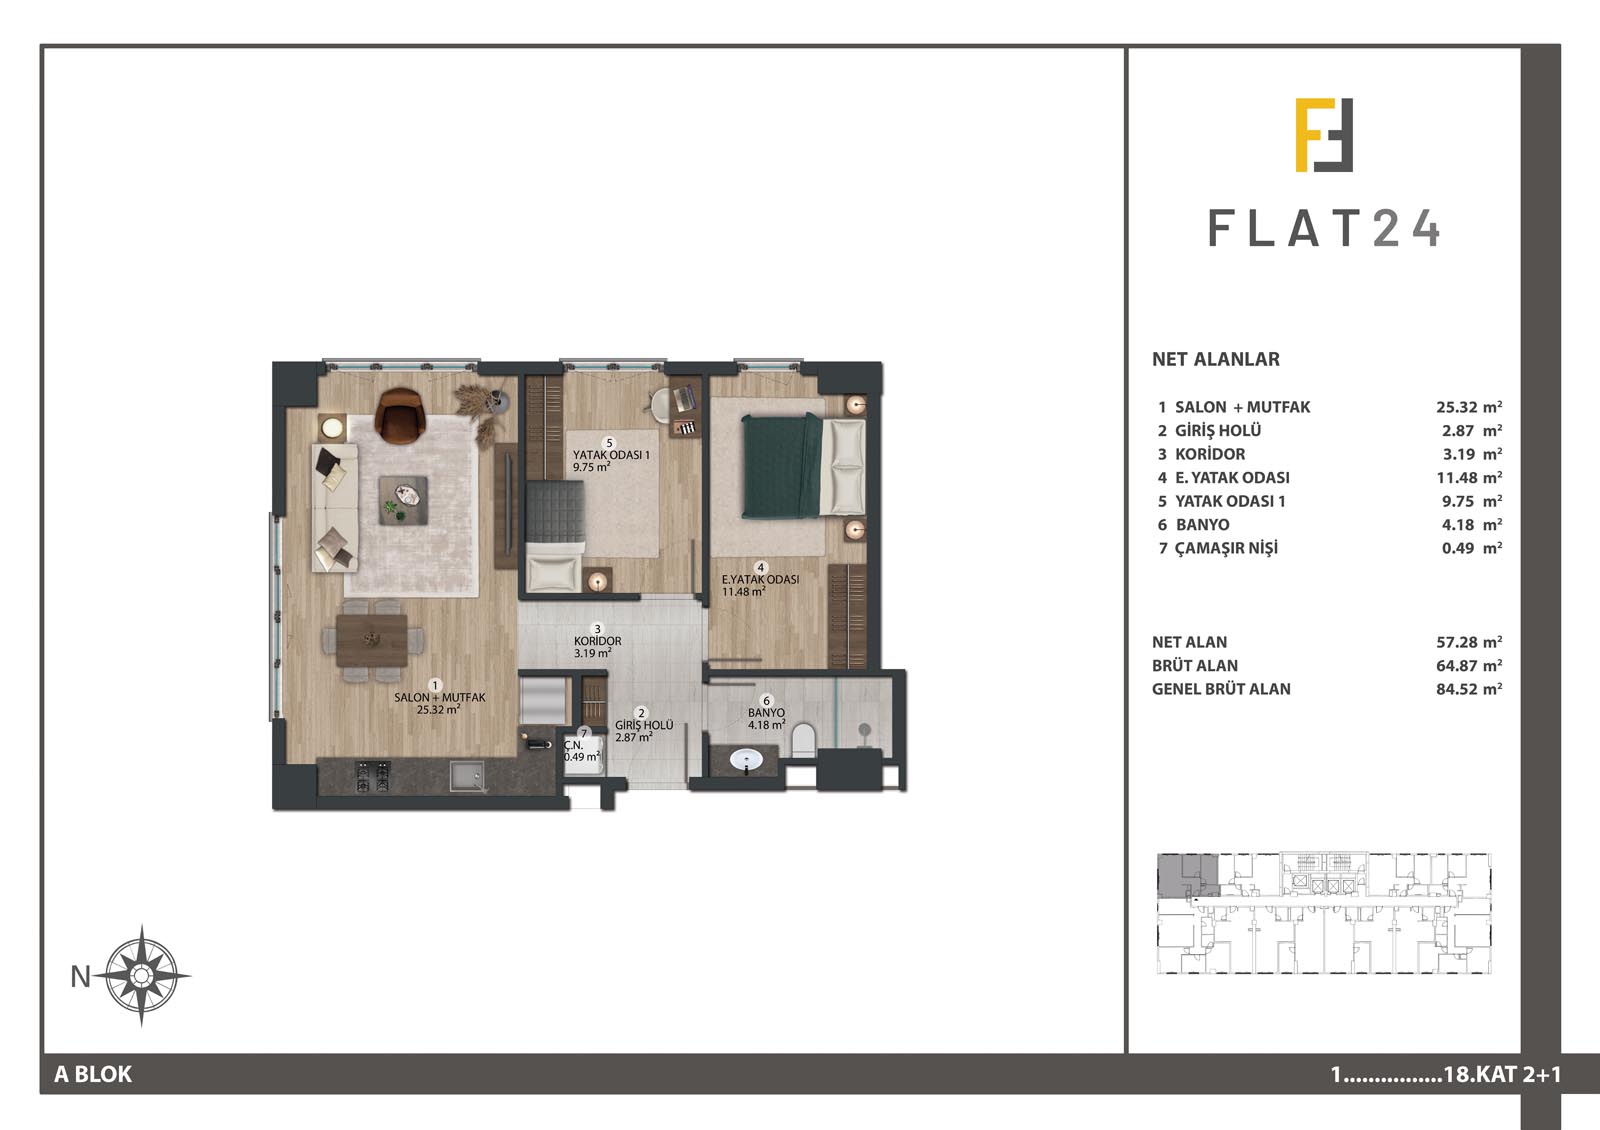 2 Bedroom Flat in Basın Ekspress Flat 24